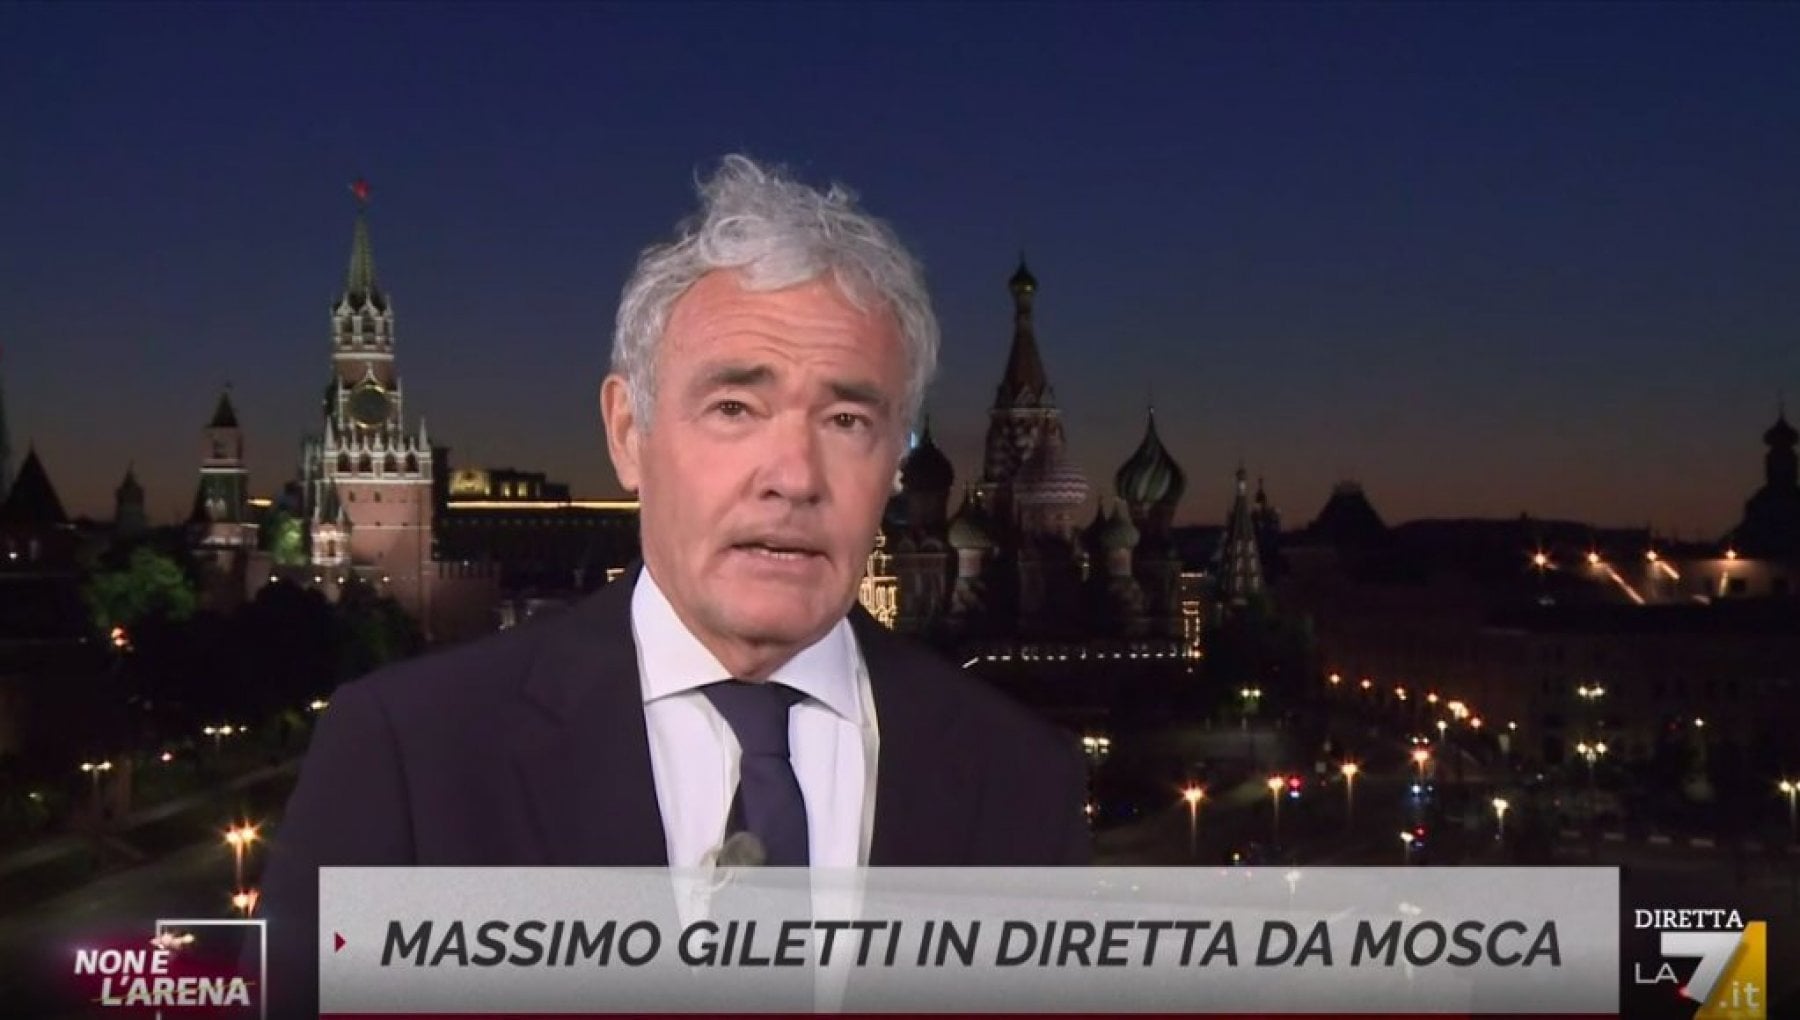 Massimo Giletti si riavvicina alla Rai? L’indiscrezione